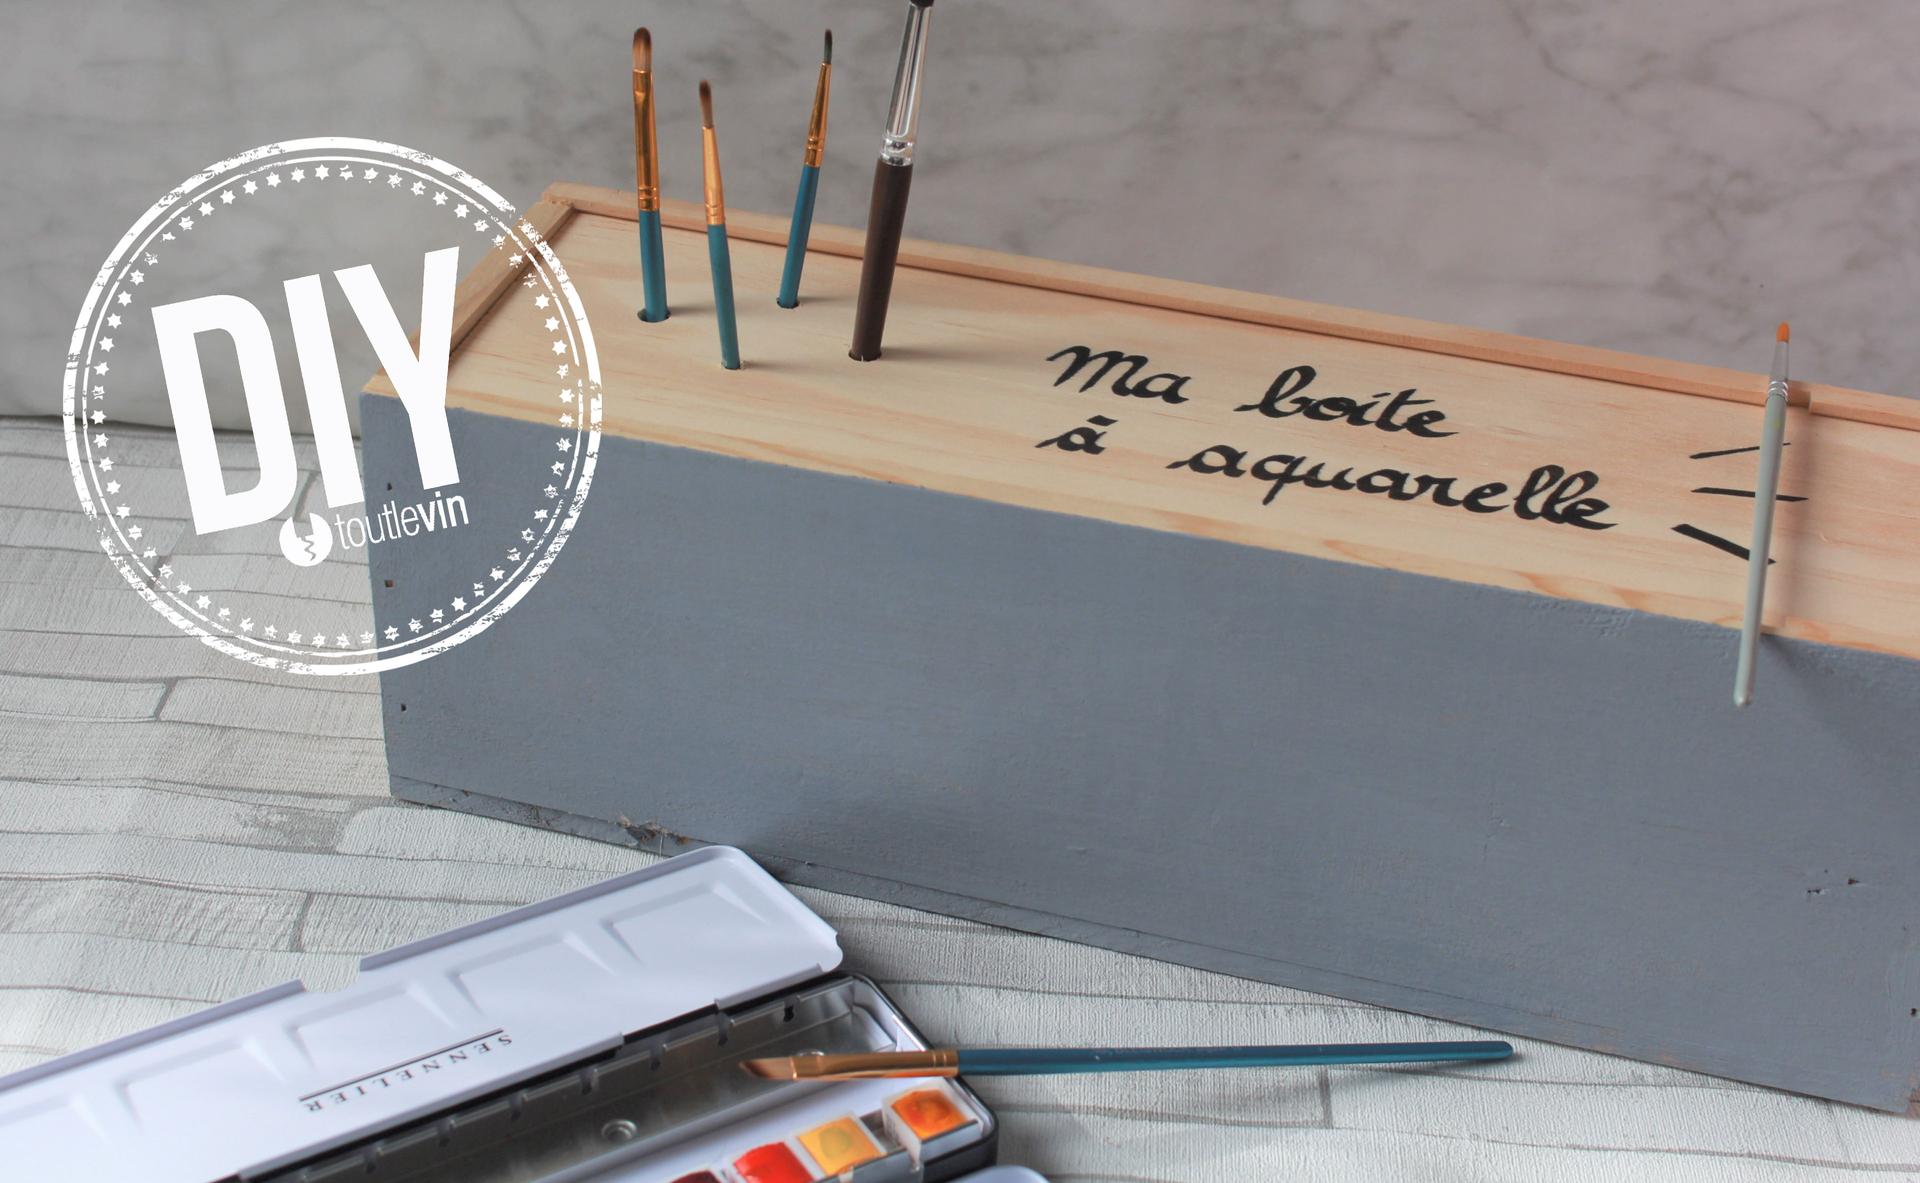 DIY : Fabriquer votre boite à peinture